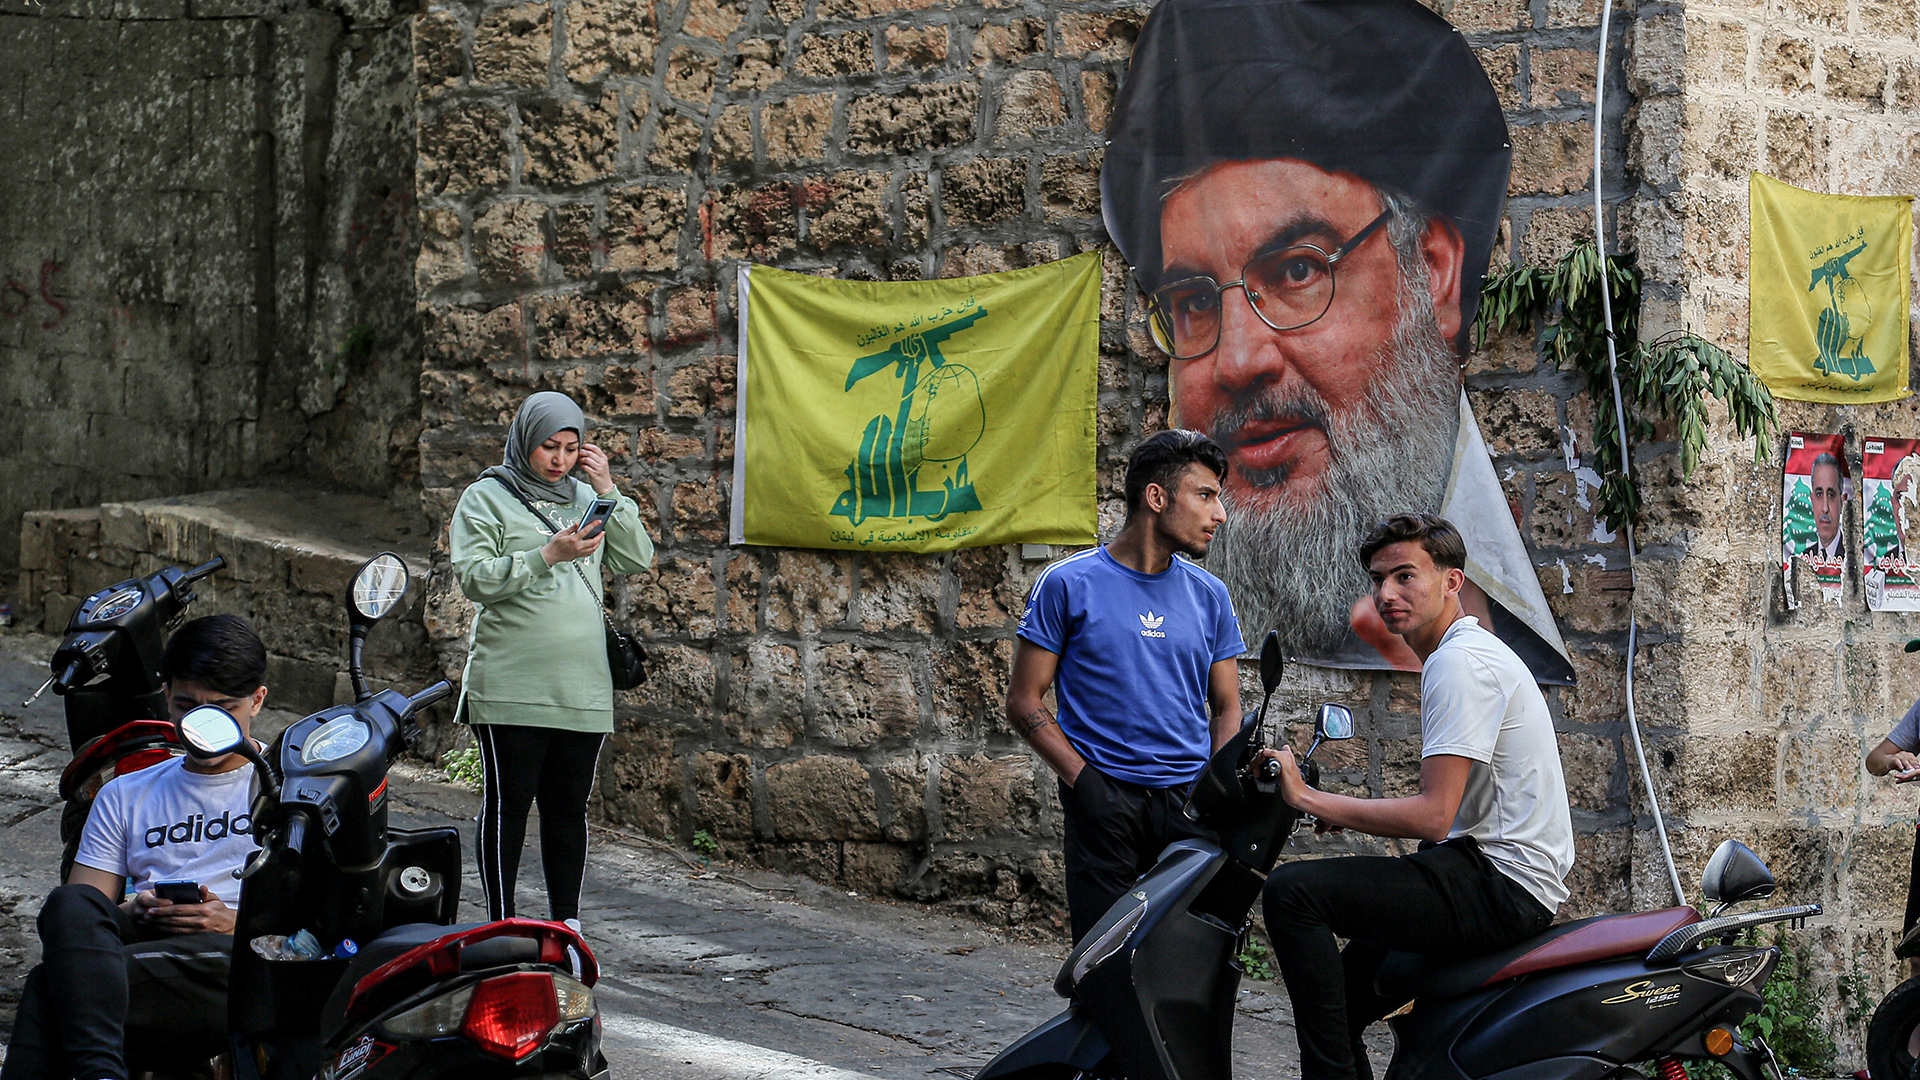 Junge Menschen auf einer Straße vor dem Bild des Hisbollah-Führers Nasrallah und Fahnen. | dpa